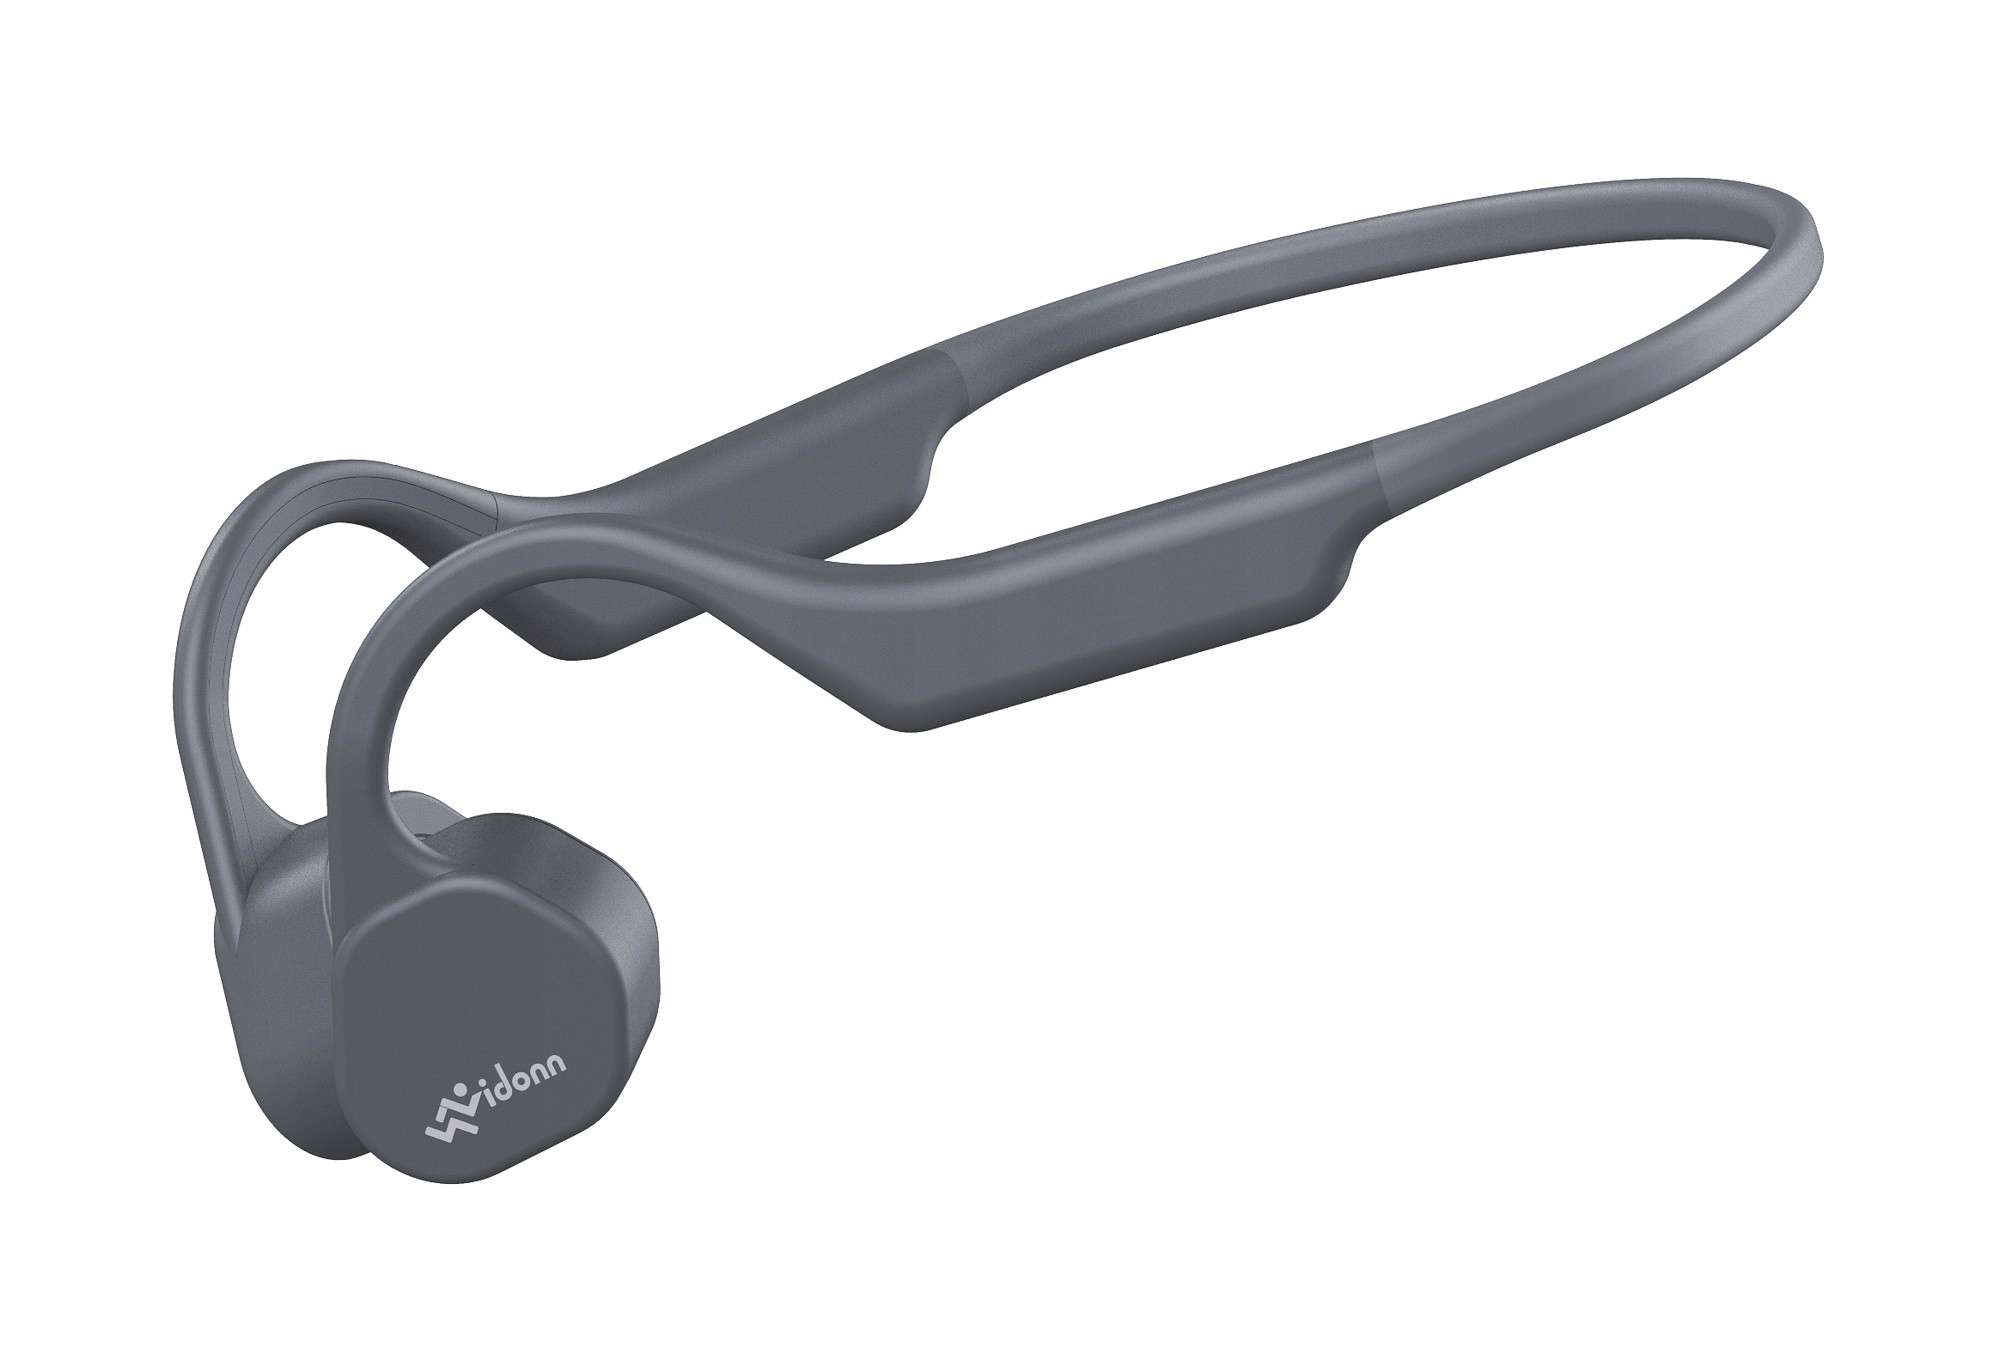 Bezdrátová sluchátka s technologií kostního vedení Vidonn F3 grey